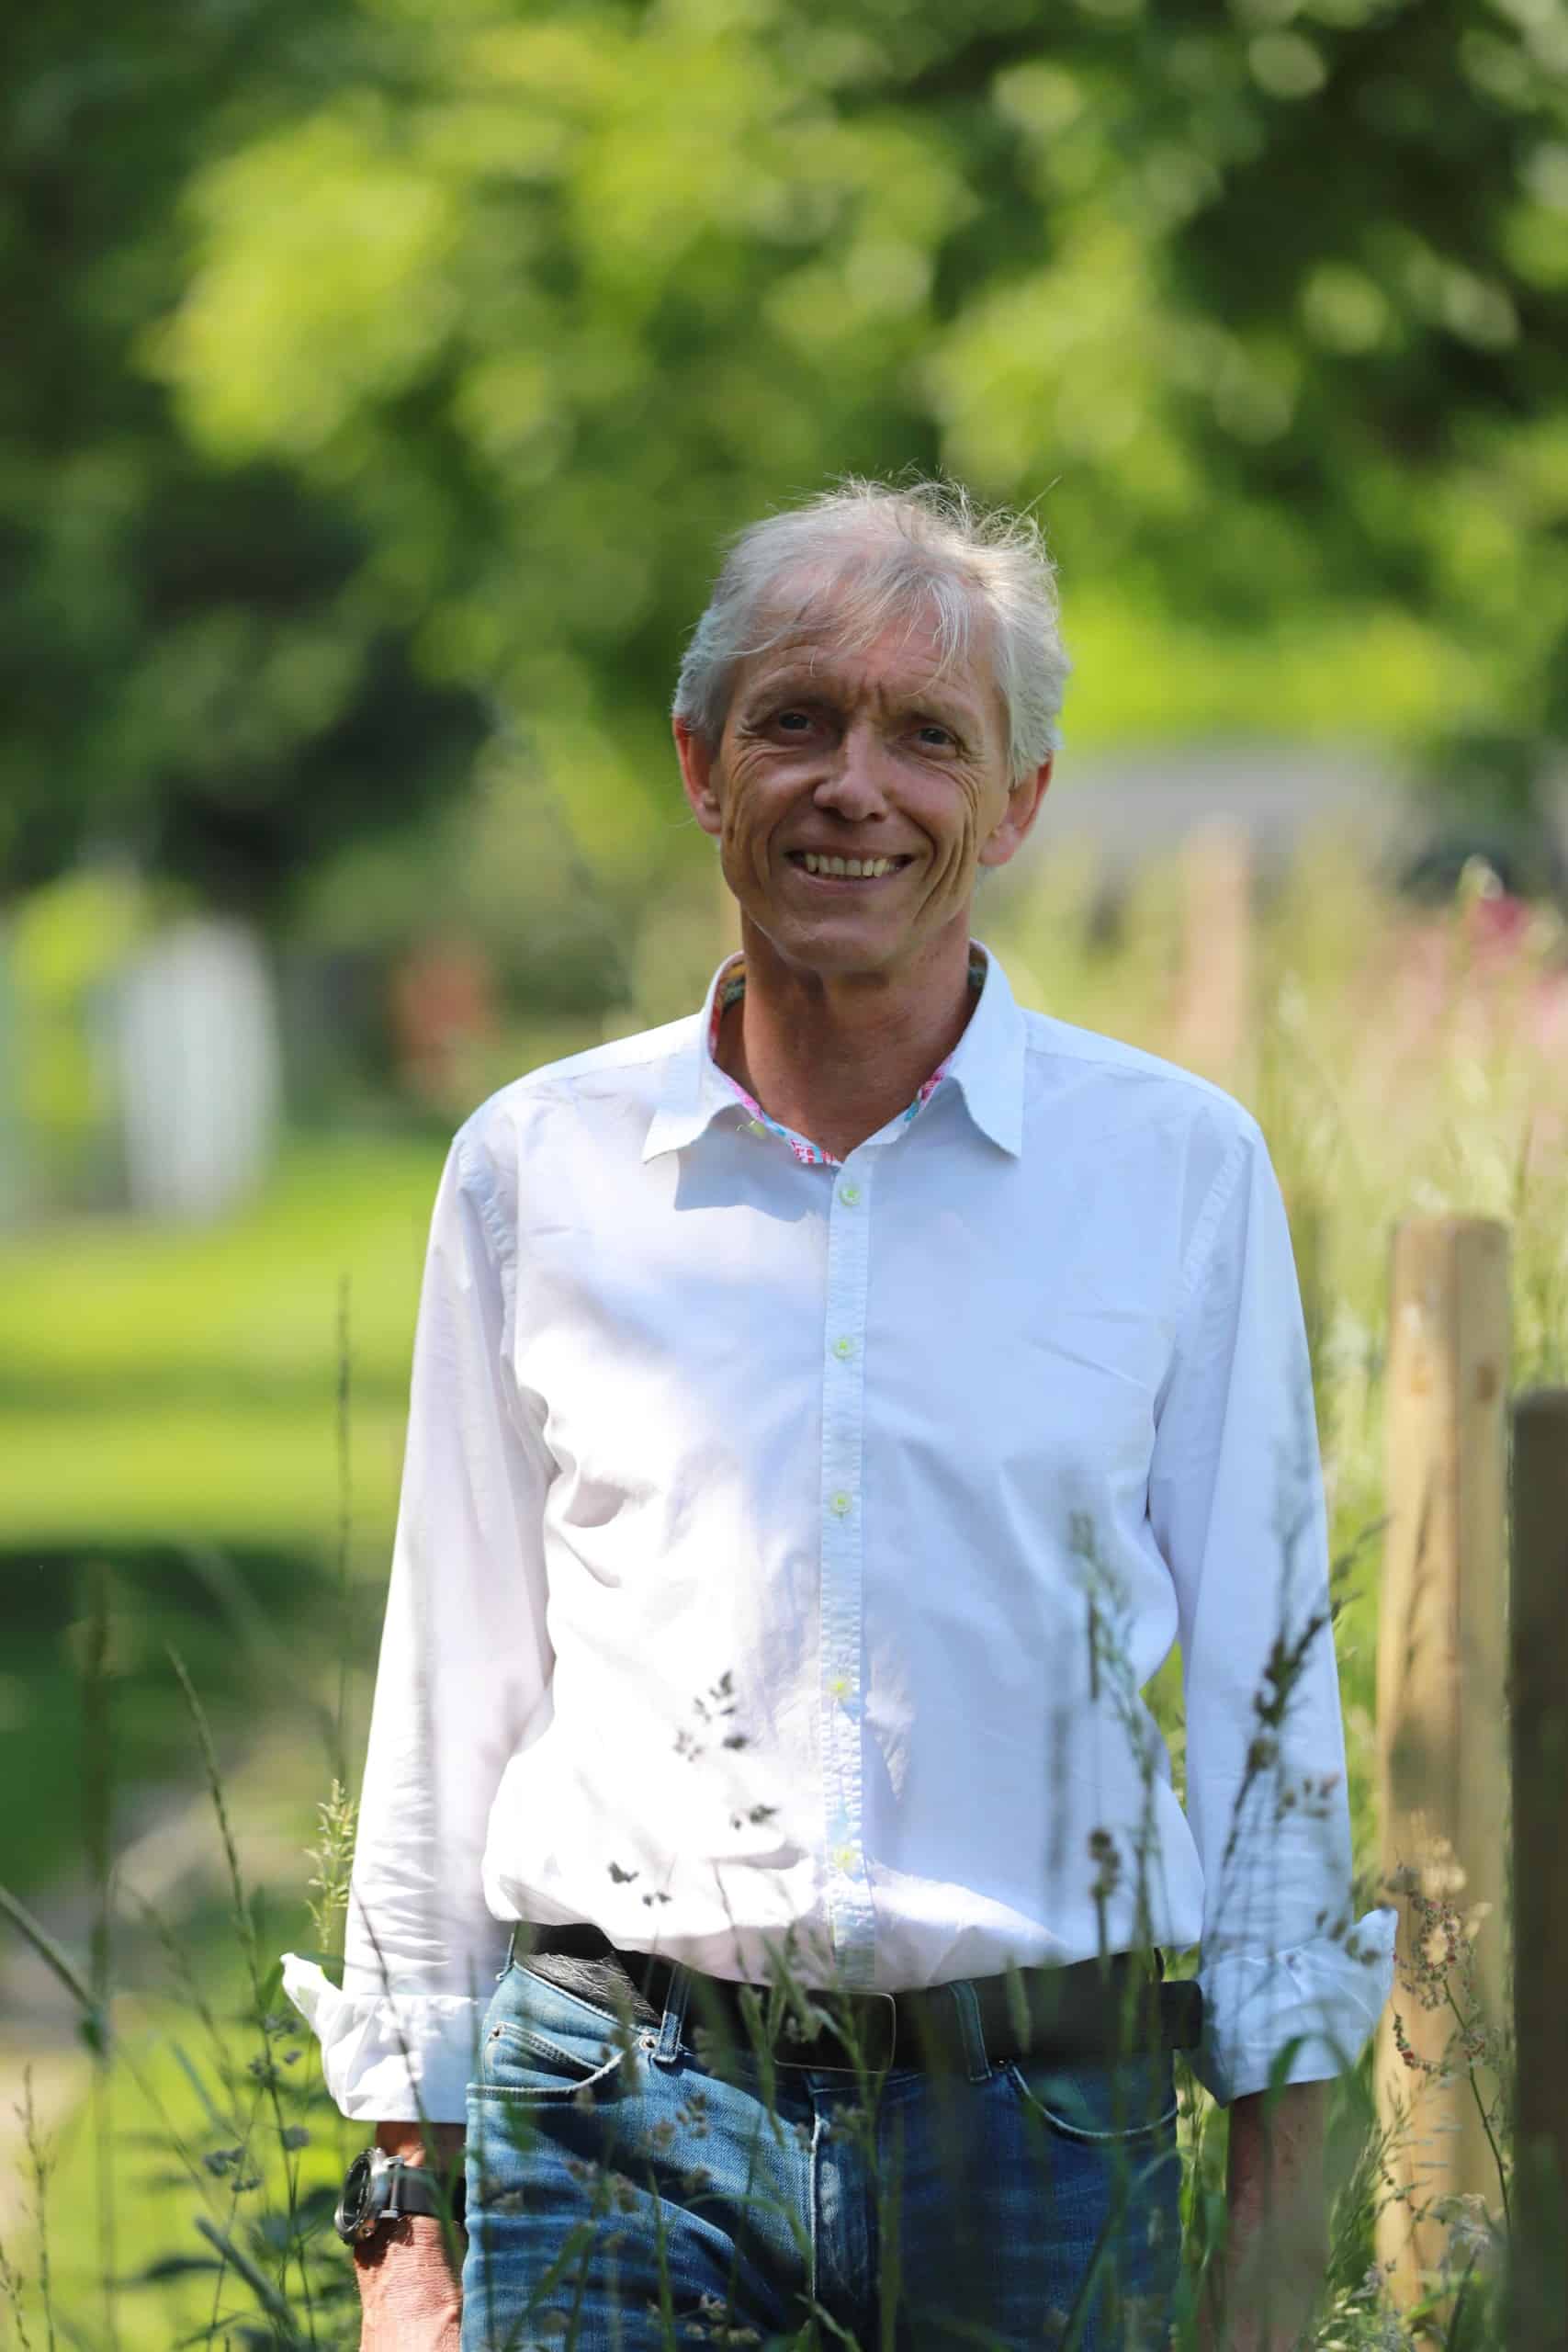 Bildbeschreibung: Ein lächelnder Mann in weißem Hemd vor grünem Hintergrund. Dirk Schelhorn war gelernter Bildhauer, machte sich als Landschaftsarchitekt selbstständig und führte bis 2020 sein Planungsbüro LS2. Foto: Sandra Escher